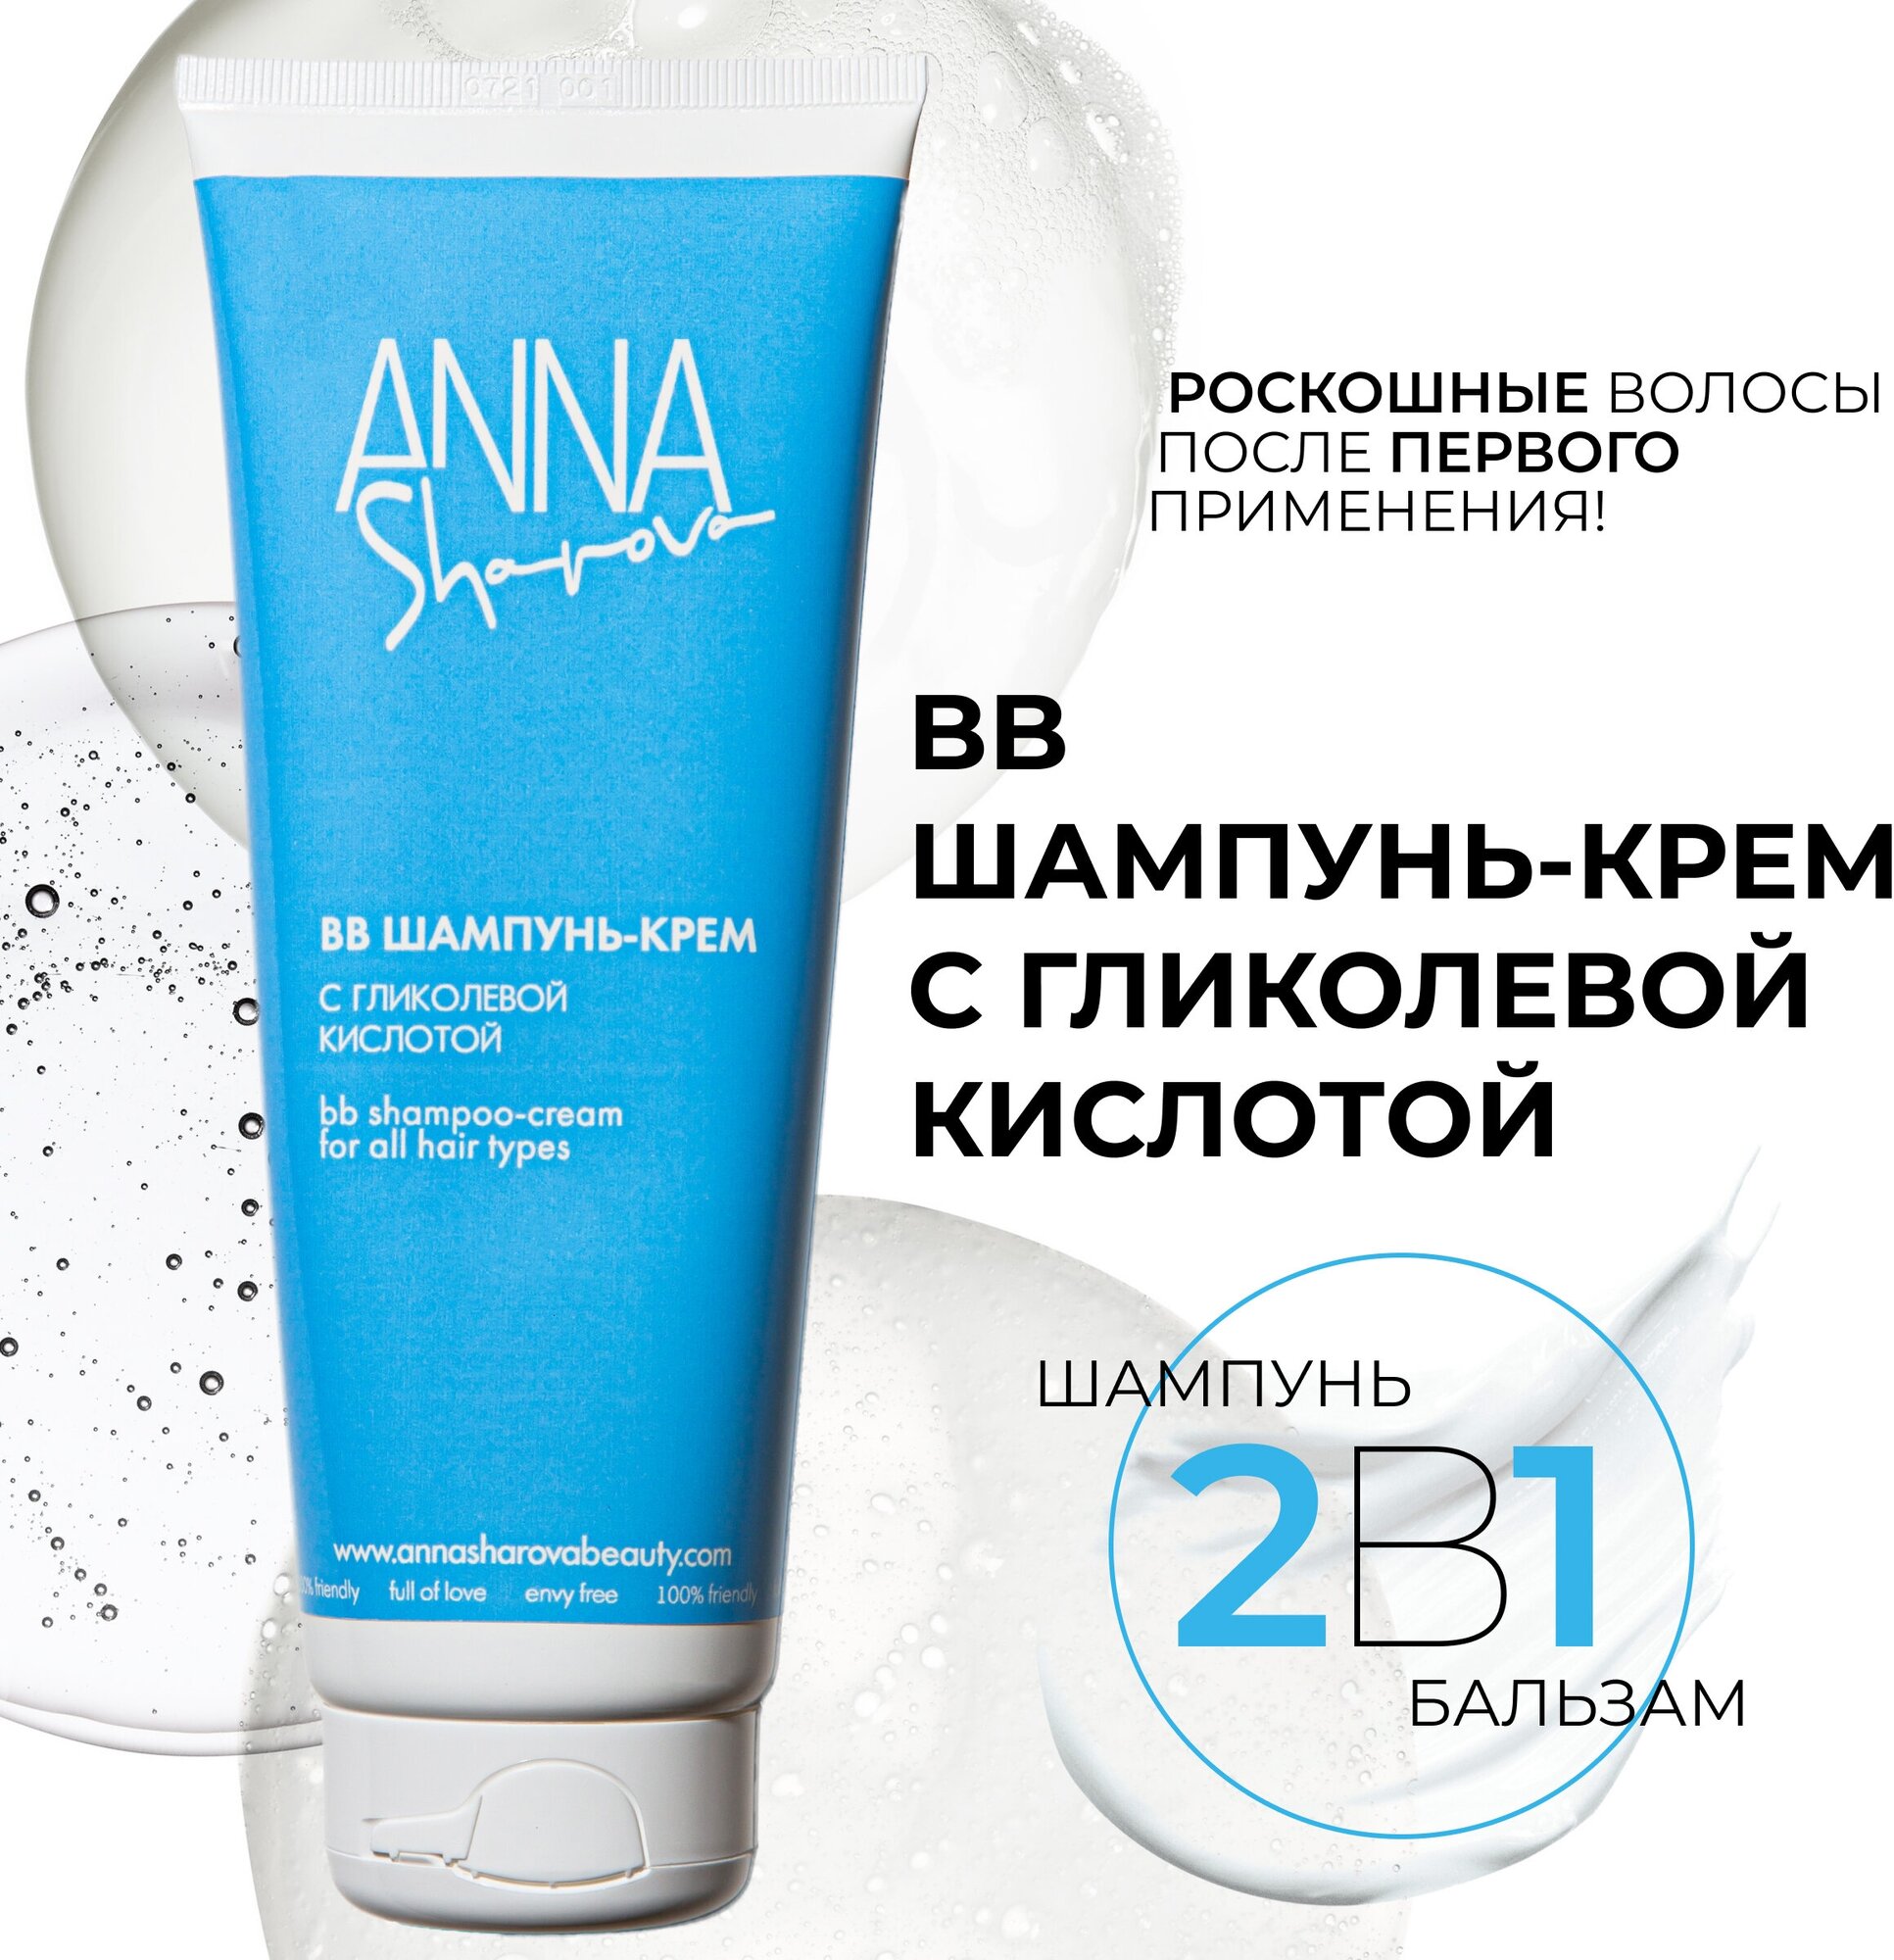 BB-шампунь крем с гликолевой кислотой ANNA SHAROVA